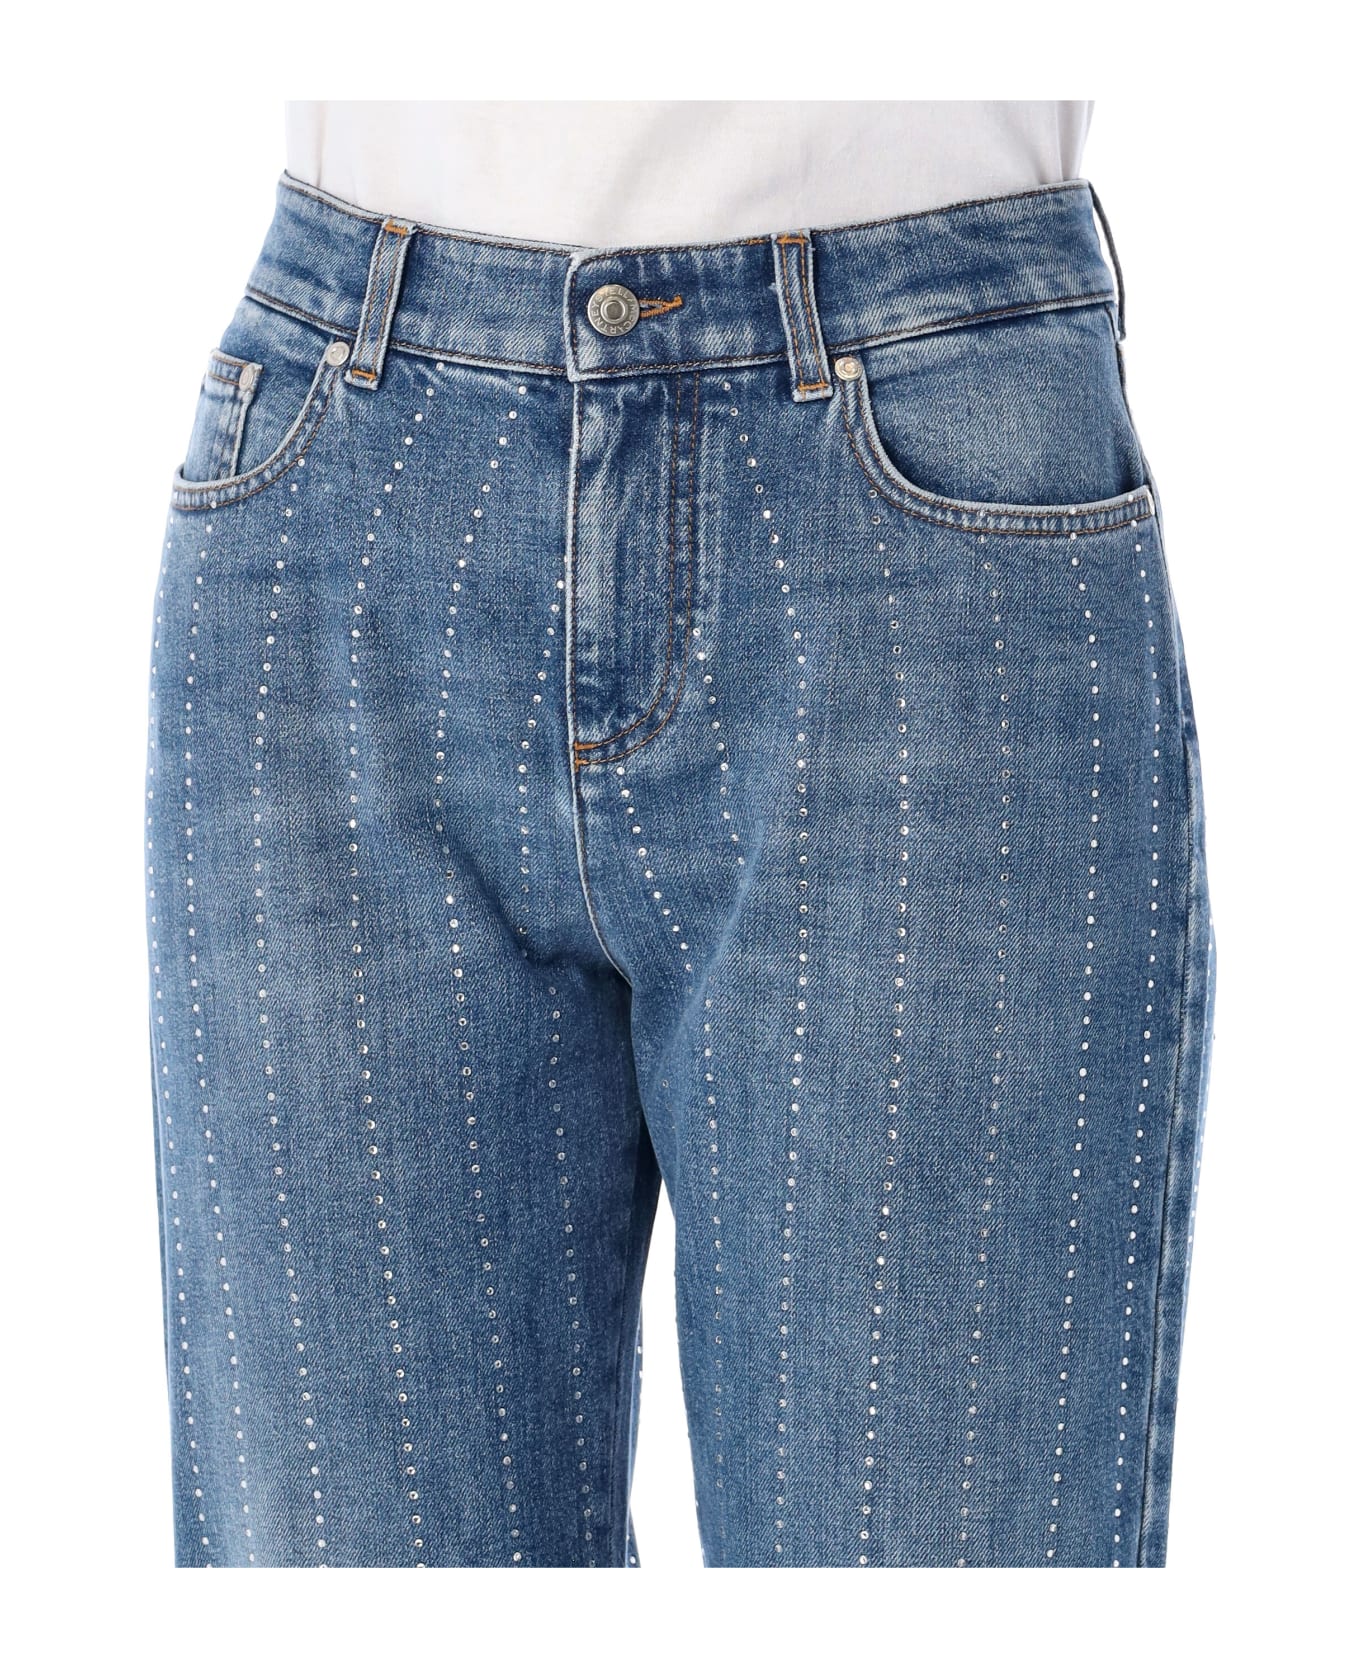 Stella McCartney Embellished Jeans - VINTAGE DARK